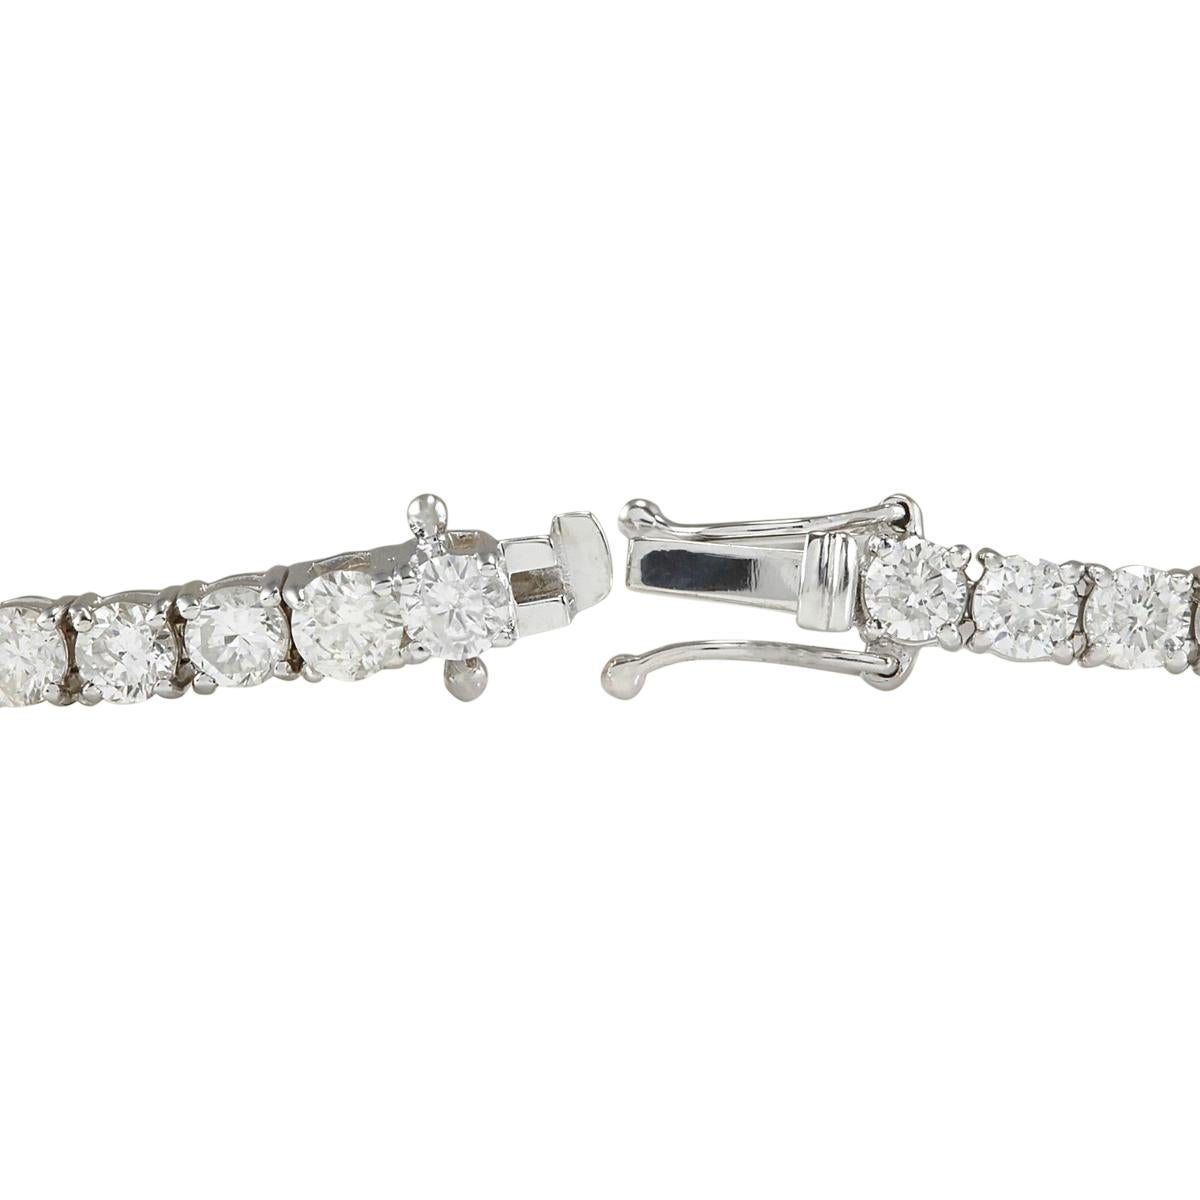 Bracelet en or blanc 14 carats avec diamant de 9,00 carats
Estampillé : Or blanc 14K
Poids total du bracelet : 13,2 grammes
Longueur du bracelet : 7.5 pouces
Largeur du bracelet : 3.80 mm
Poids du diamant : Le poids total des diamants naturels est